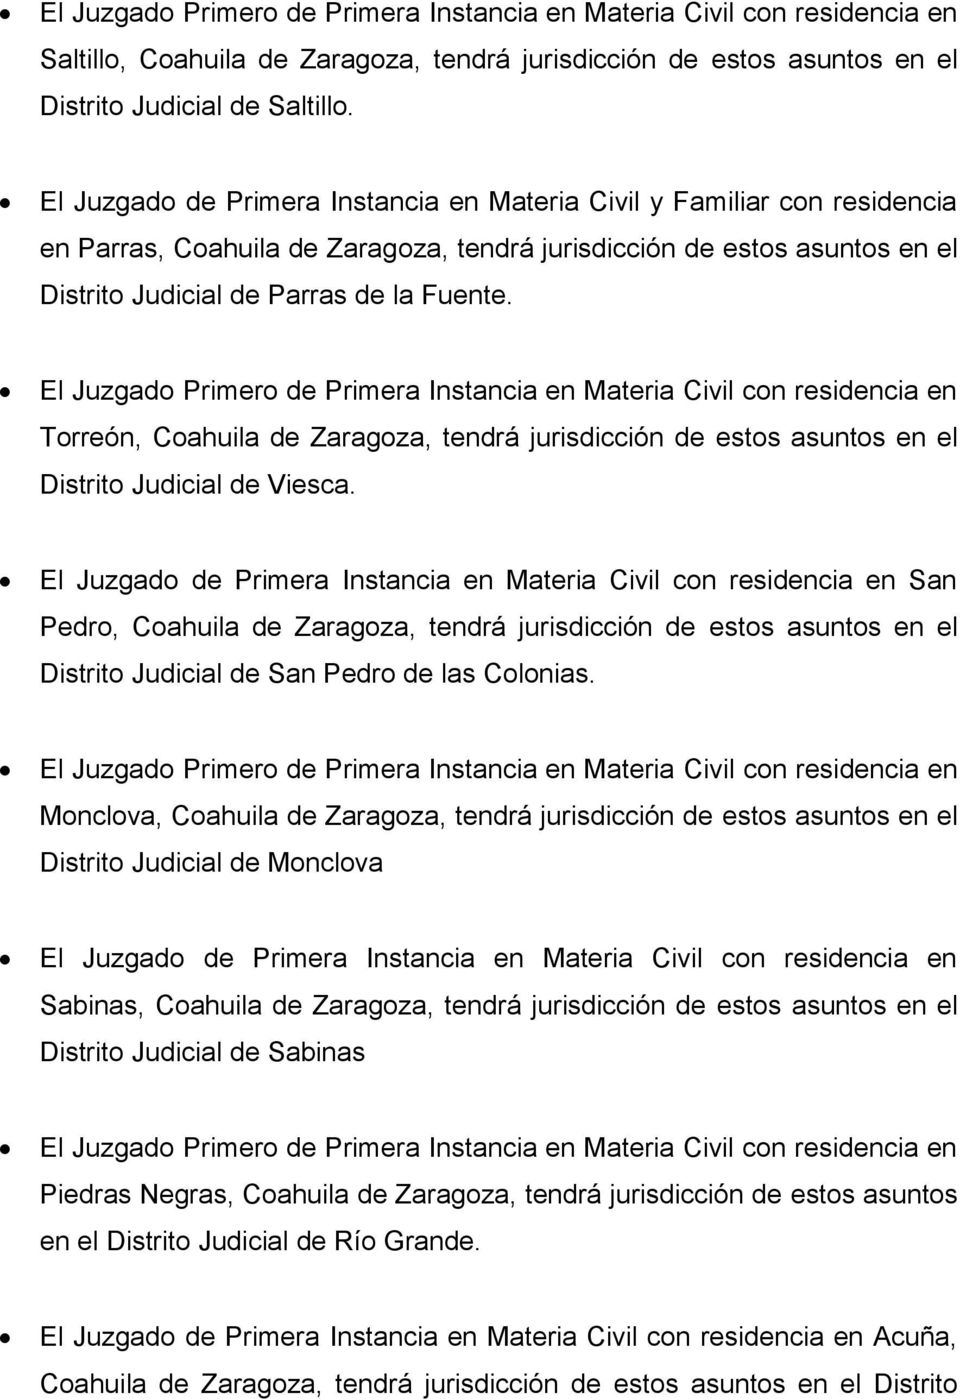 Torreón, Coahuila de Zaragoza, tendrá jurisdicción de estos asuntos en el Distrito Judicial de Viesca.